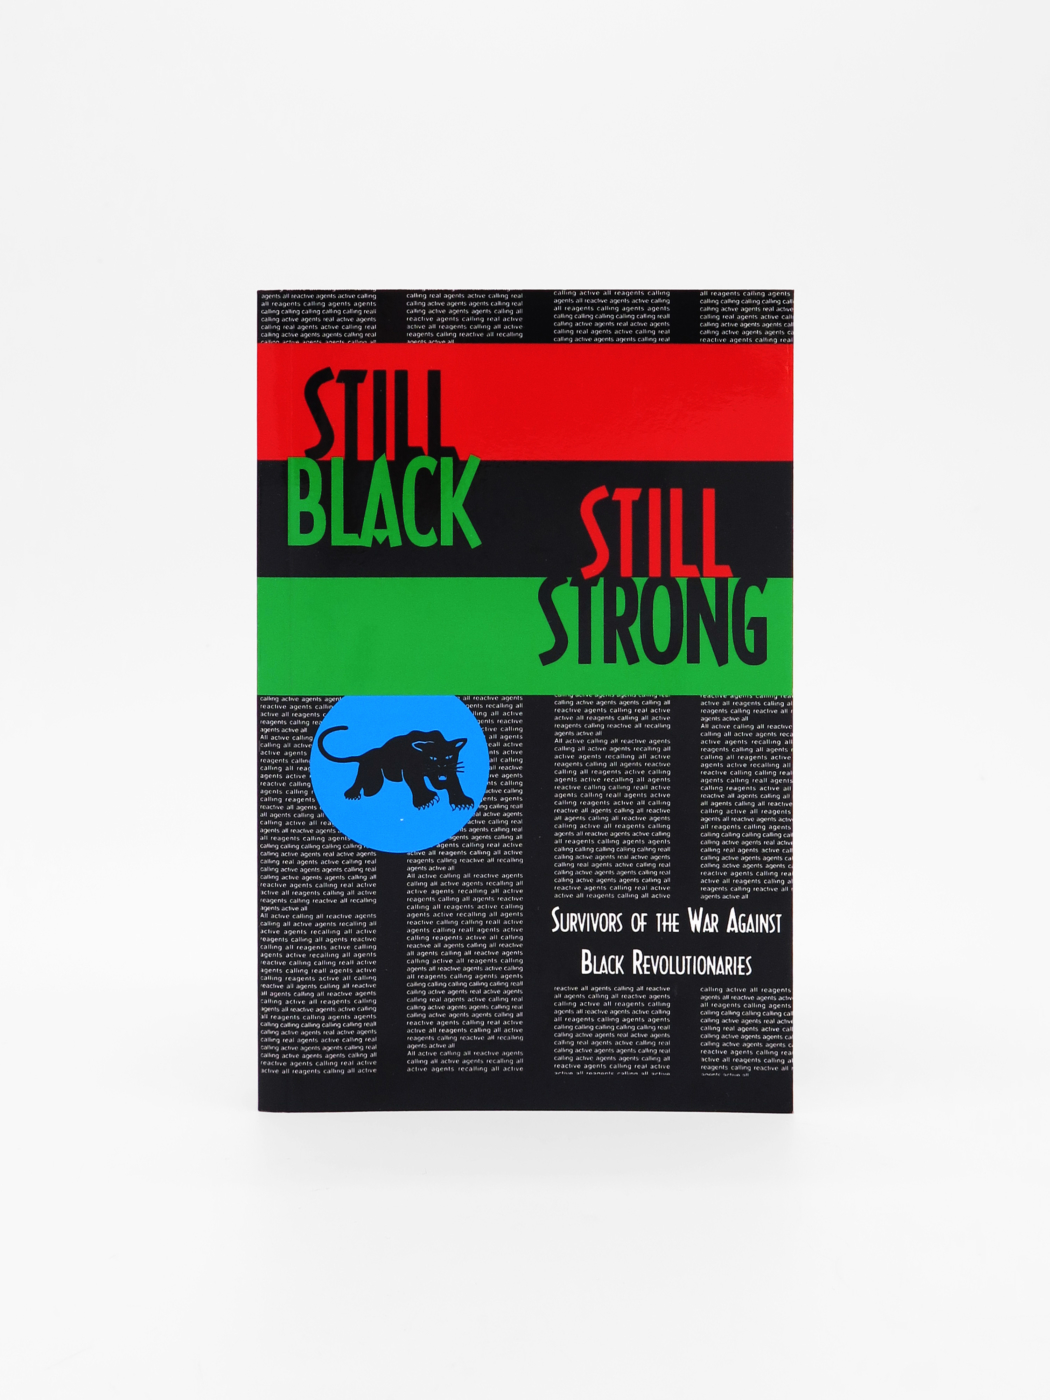 Still Black, Still Strong